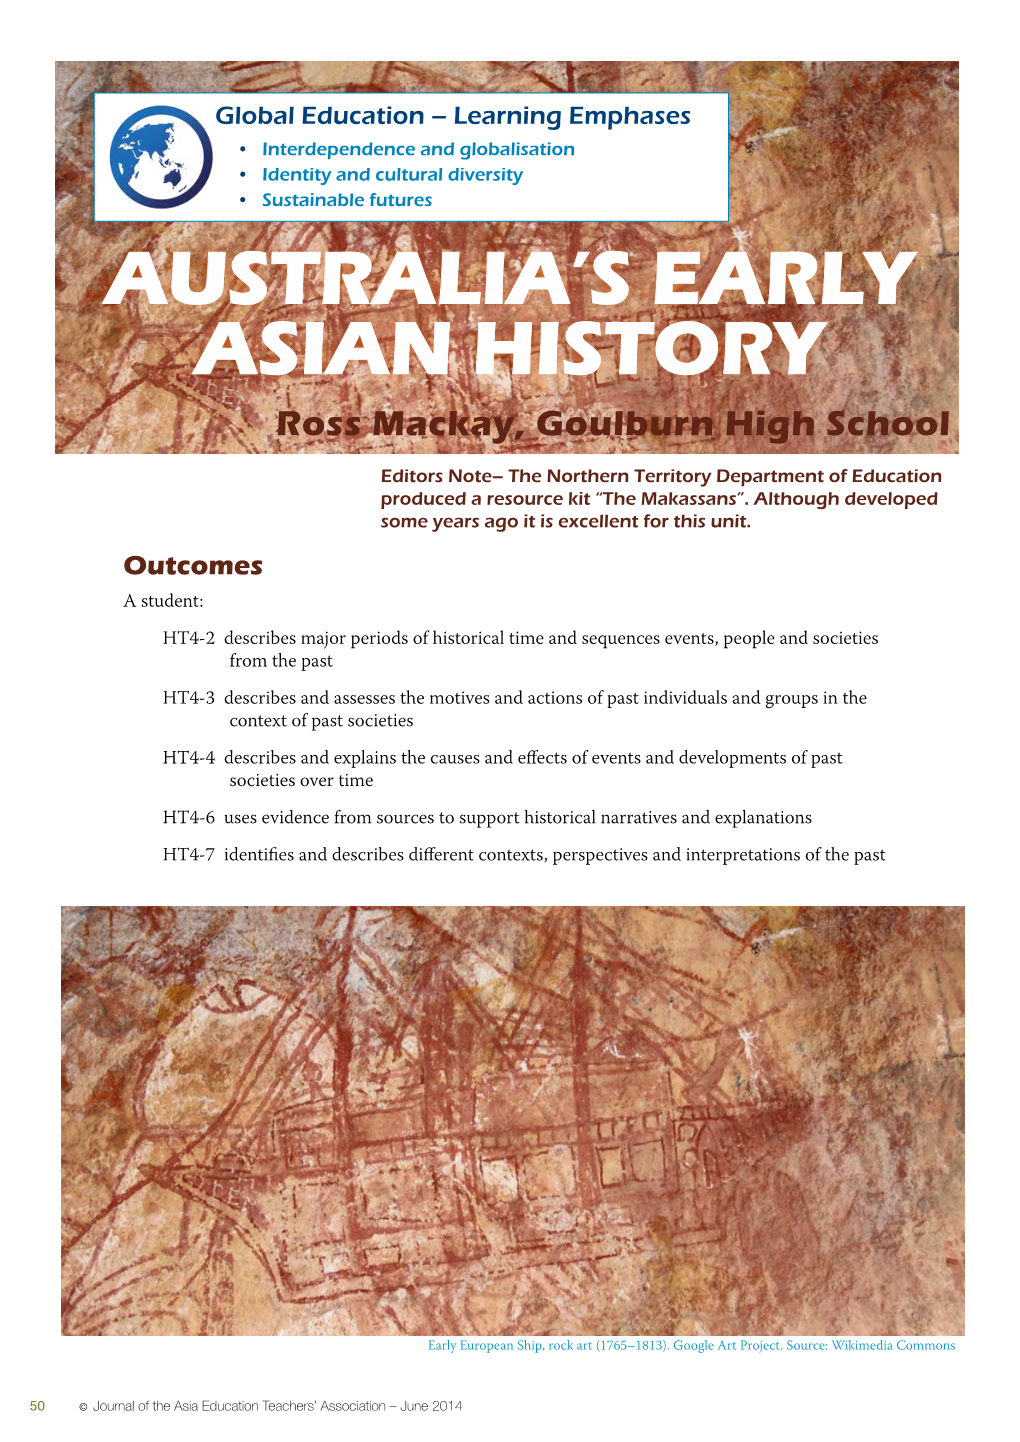 Australia's Early Asian History